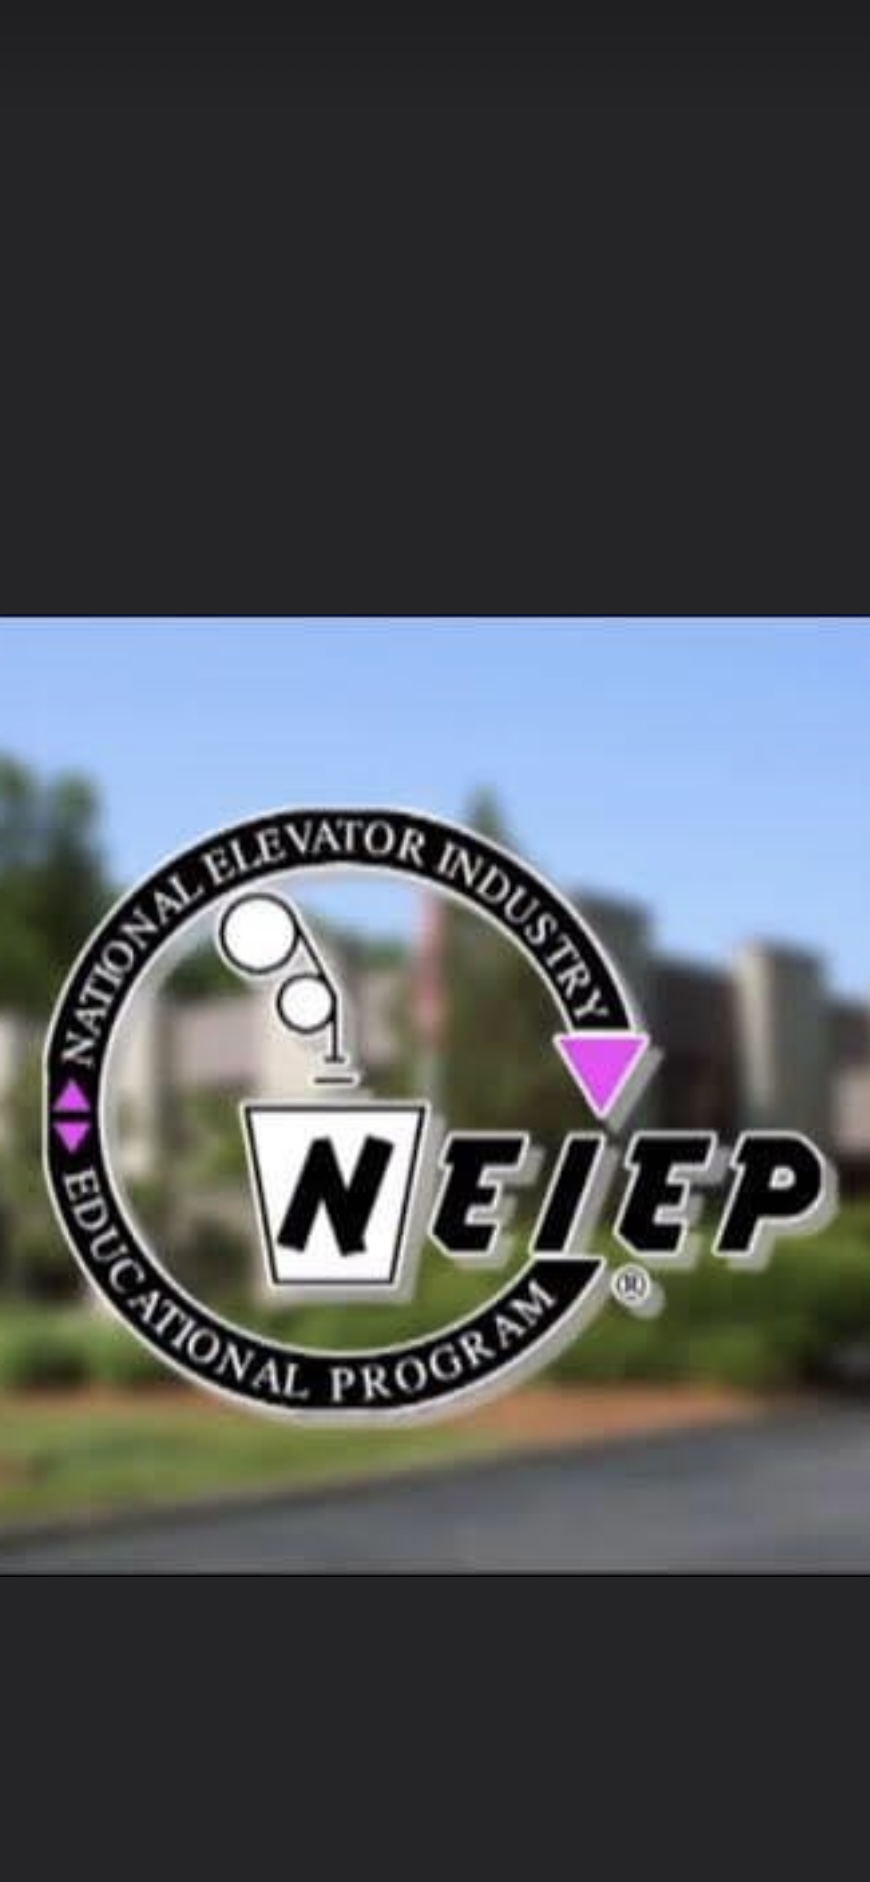 Visit Neiep.org!